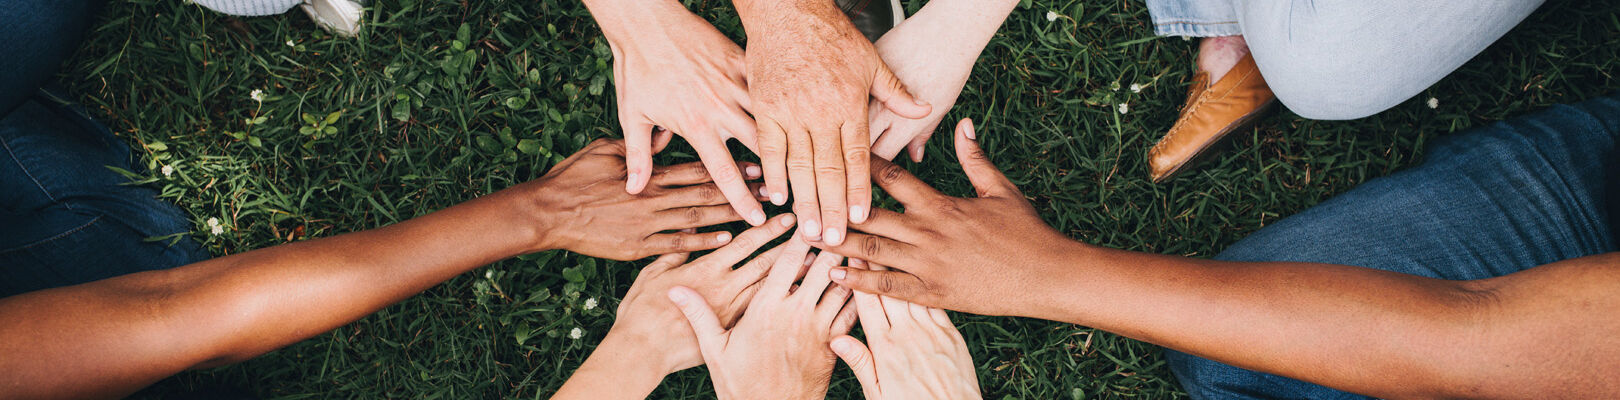 Des personnes tendent les mains pour se motiver avant de commencer la vie associative.